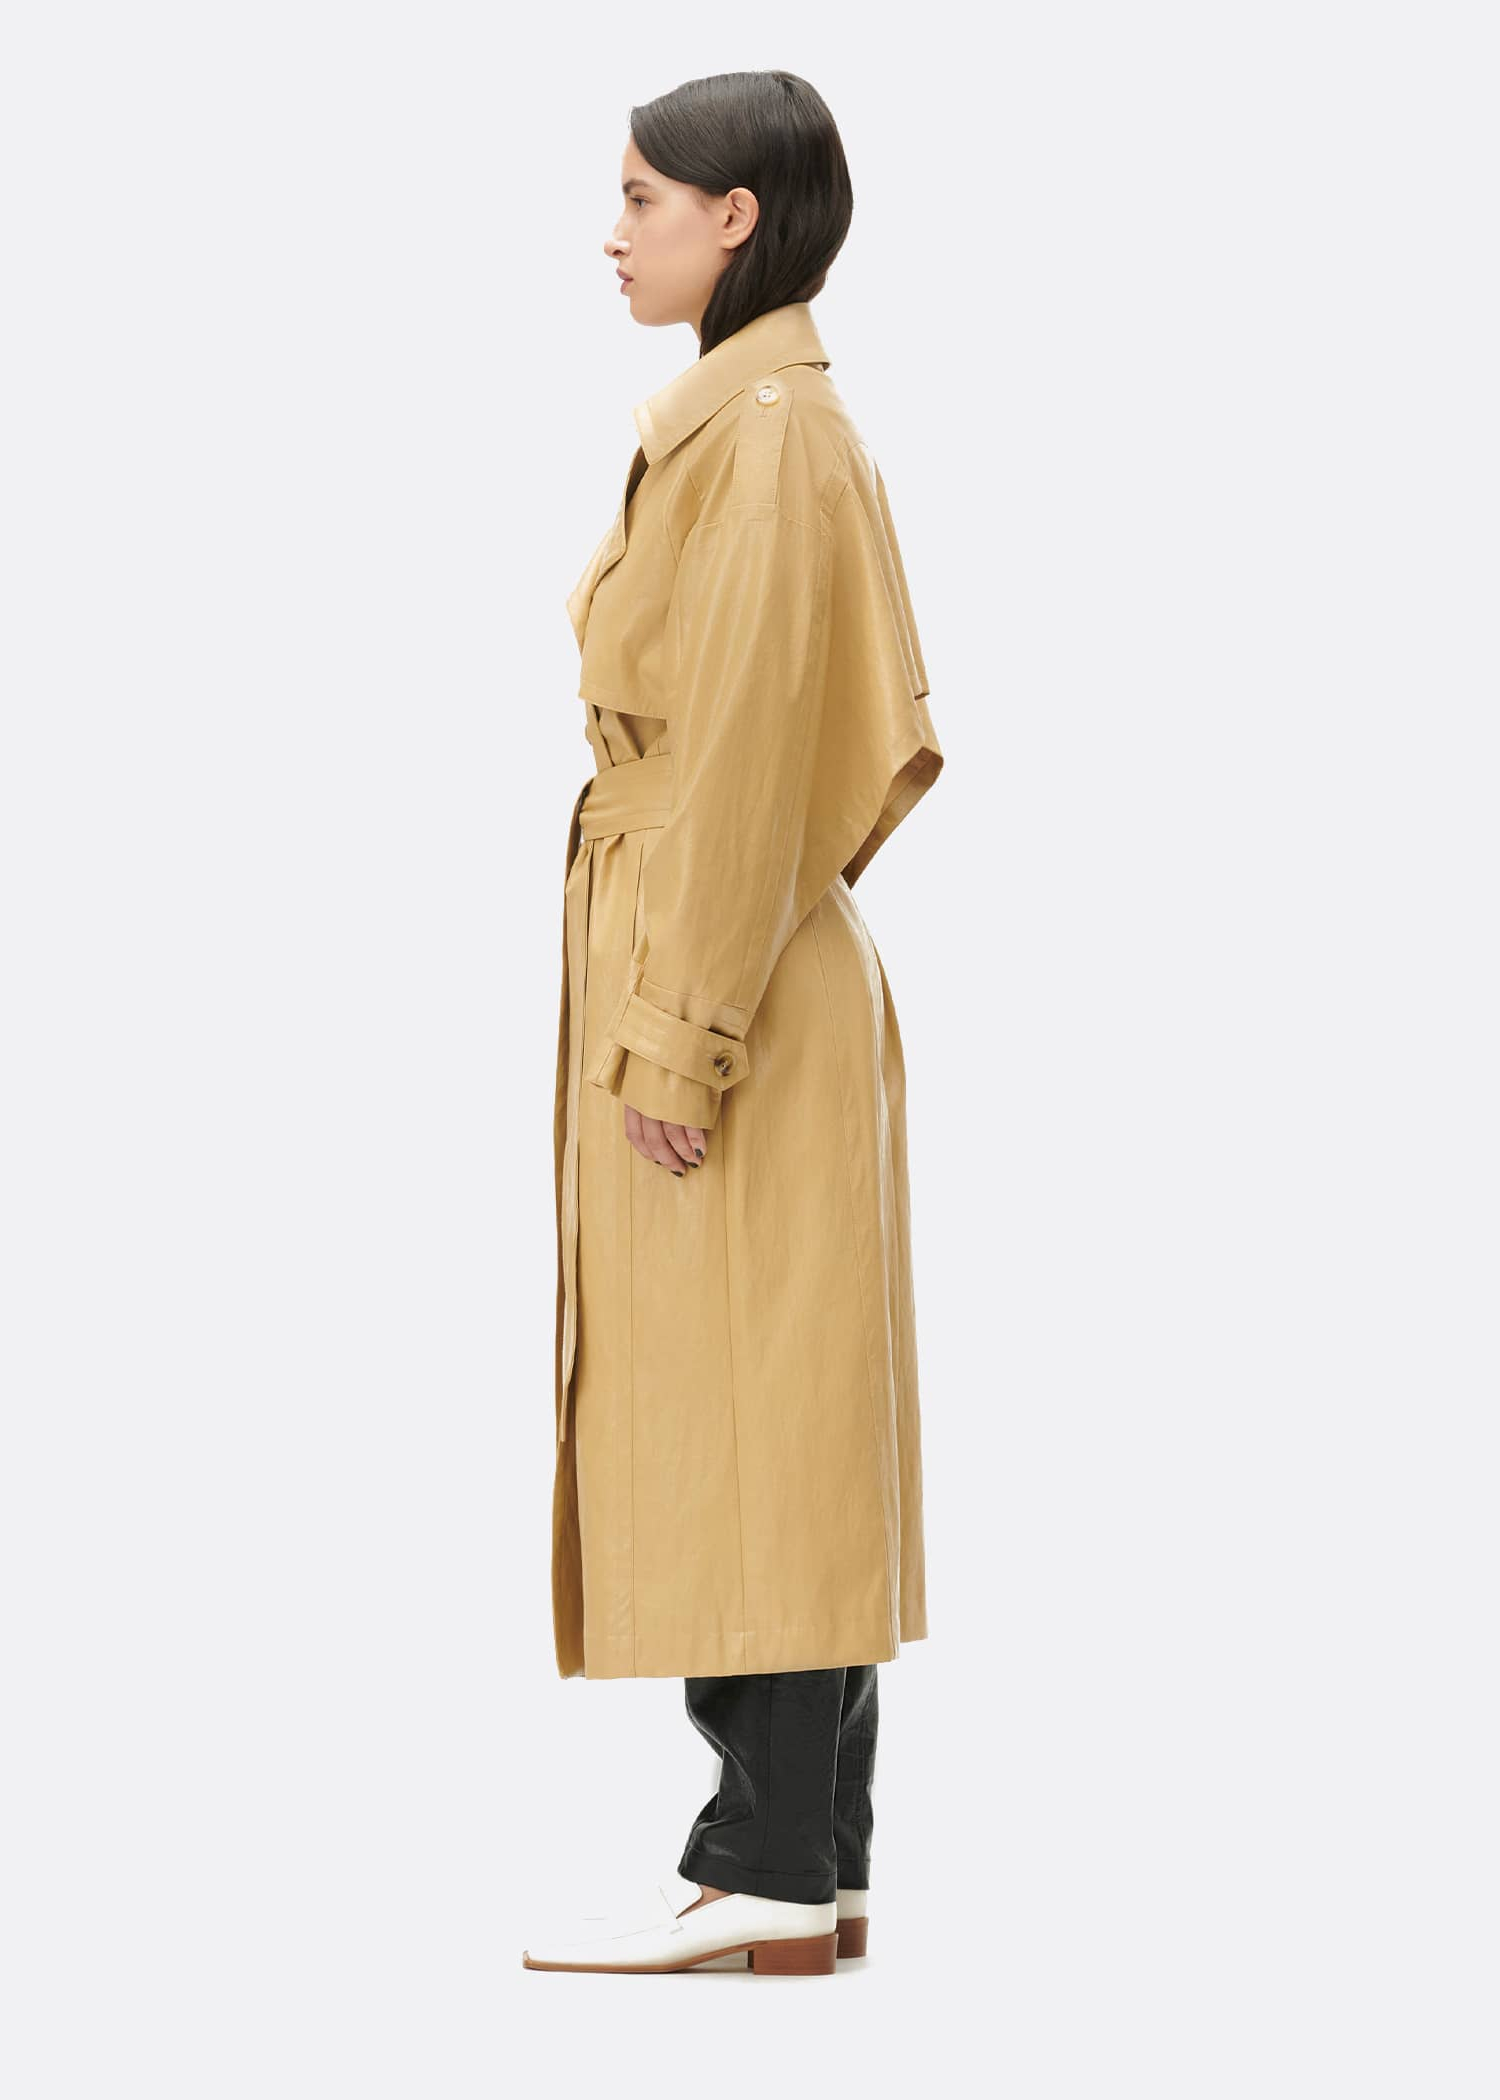 Lala Berlin Olivia Trench Coat